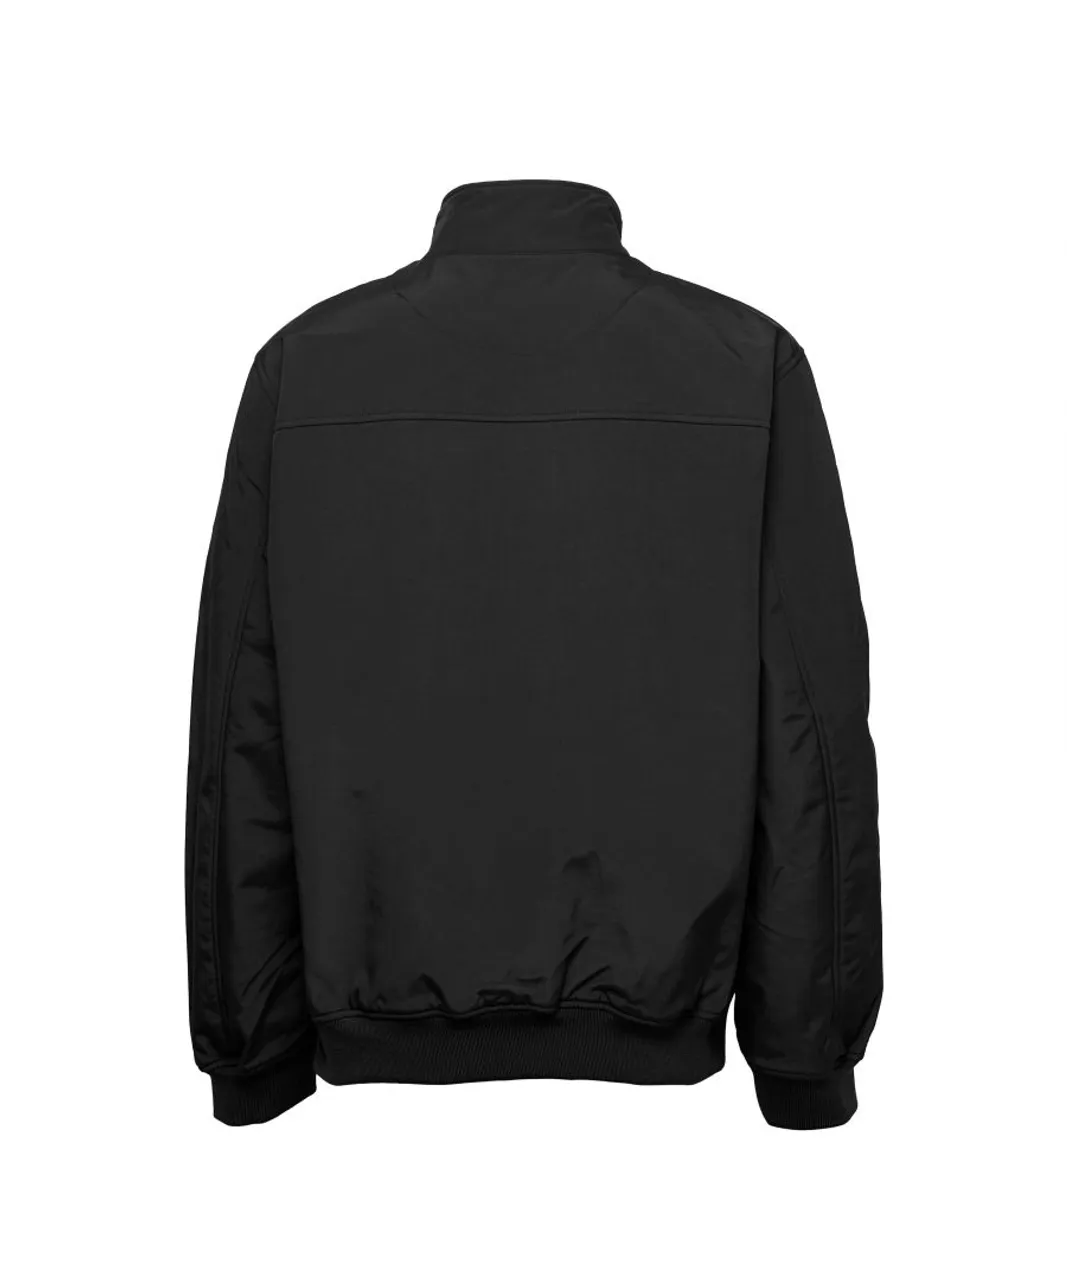 Lyle & Scott Mens Fleece Lined Funnel Neck Jacket in Black